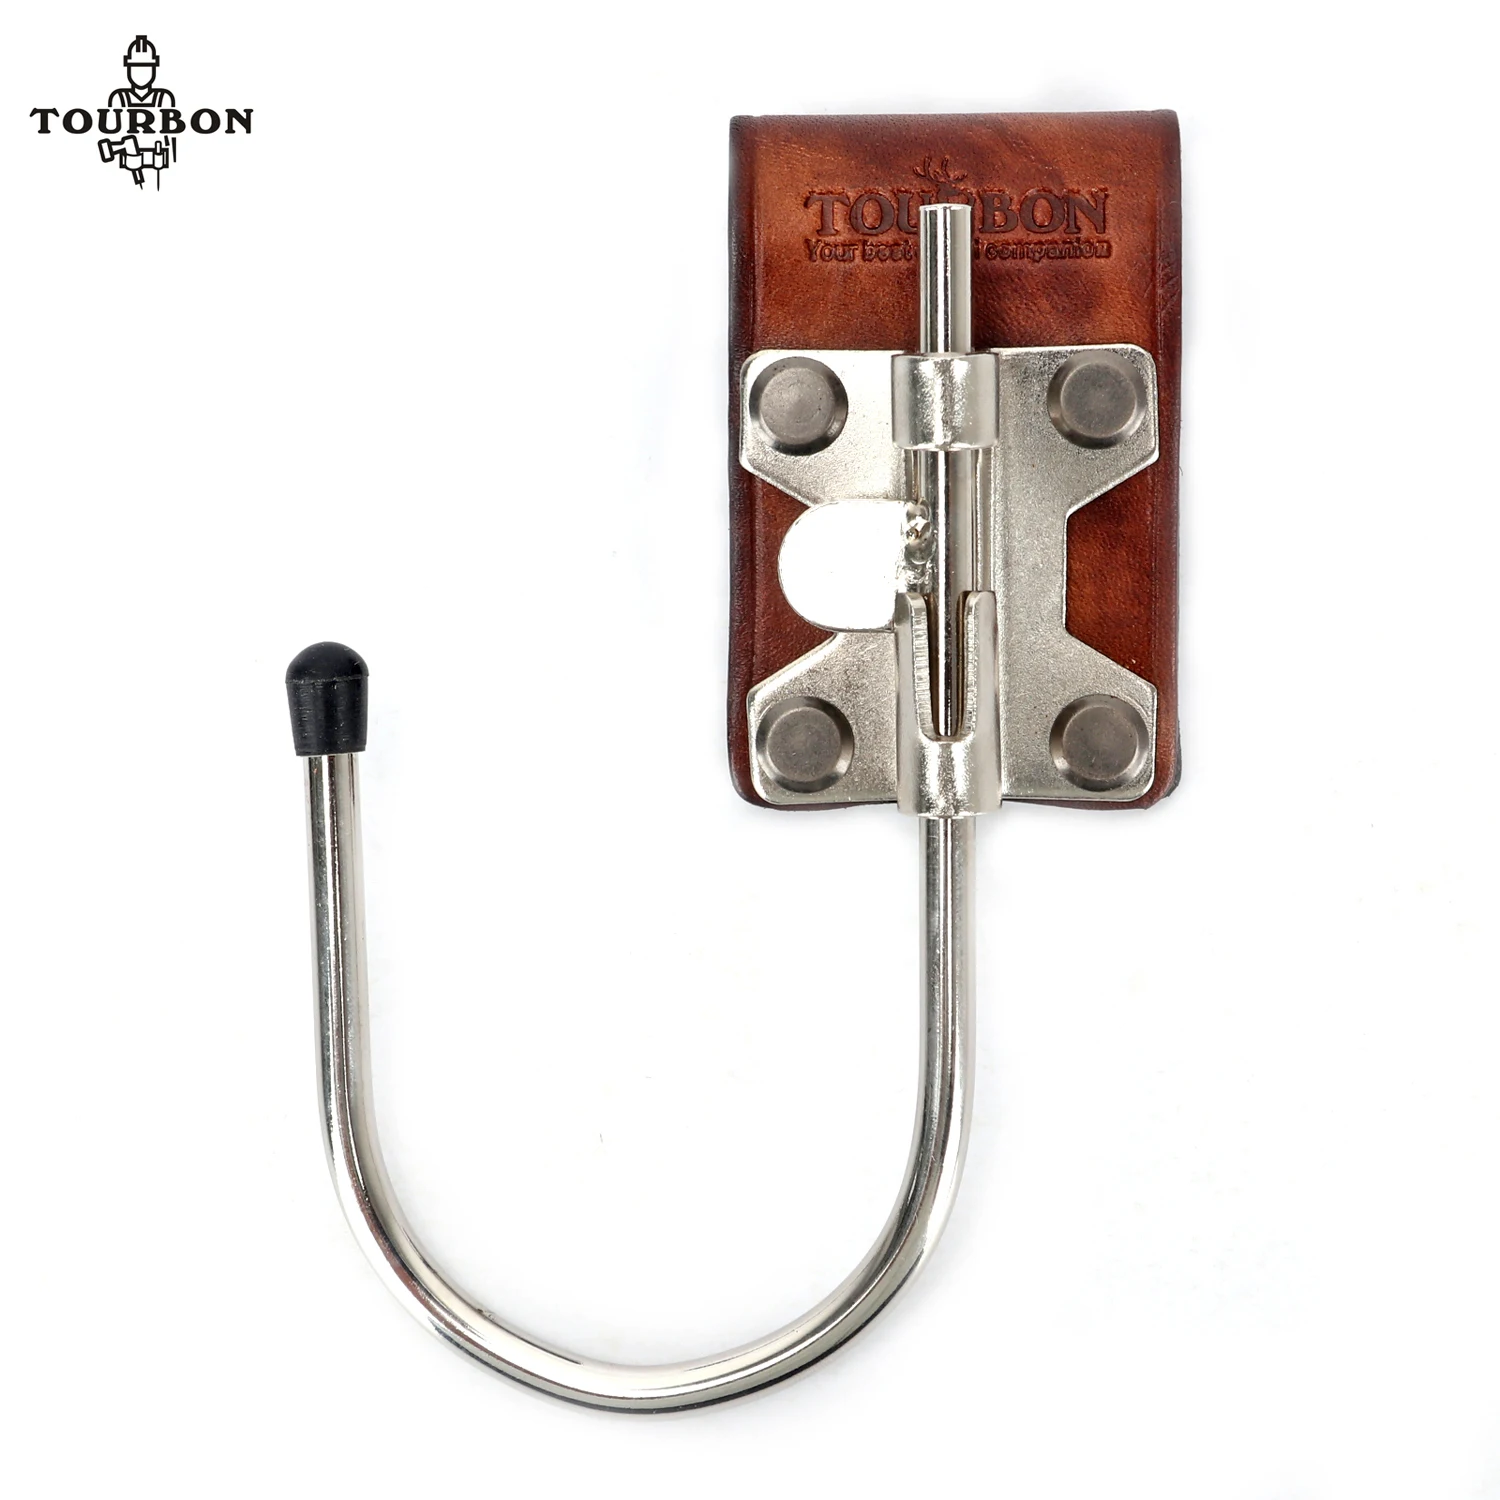 Tourbon Real Leather Loop & Steel Float Hook Multi Drill Too